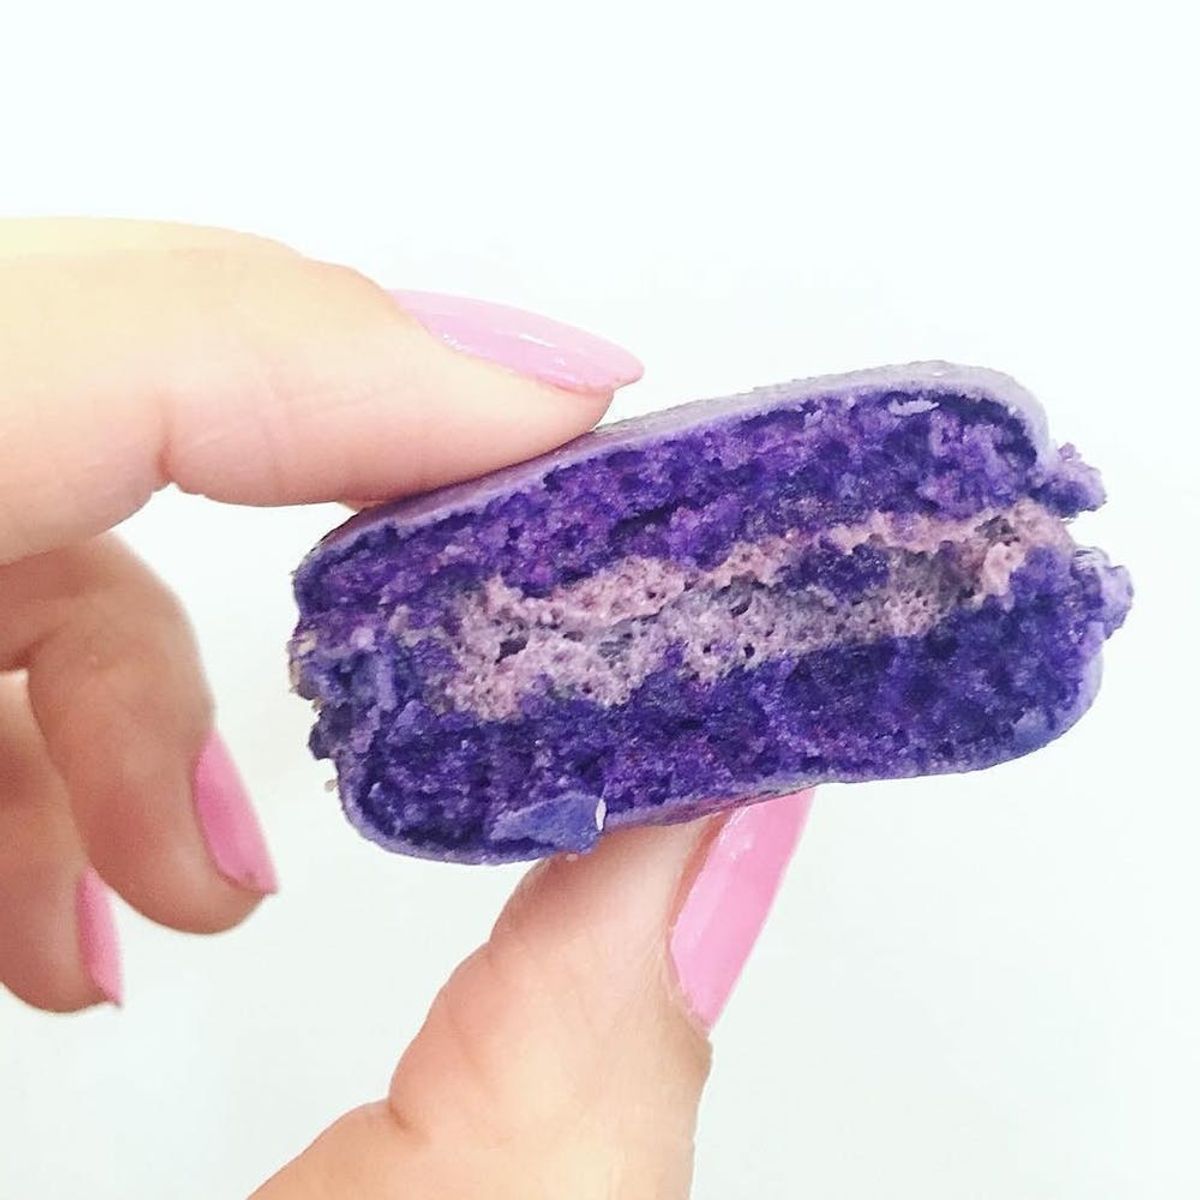 This Purple Food Trend Is Killing It on Instagram